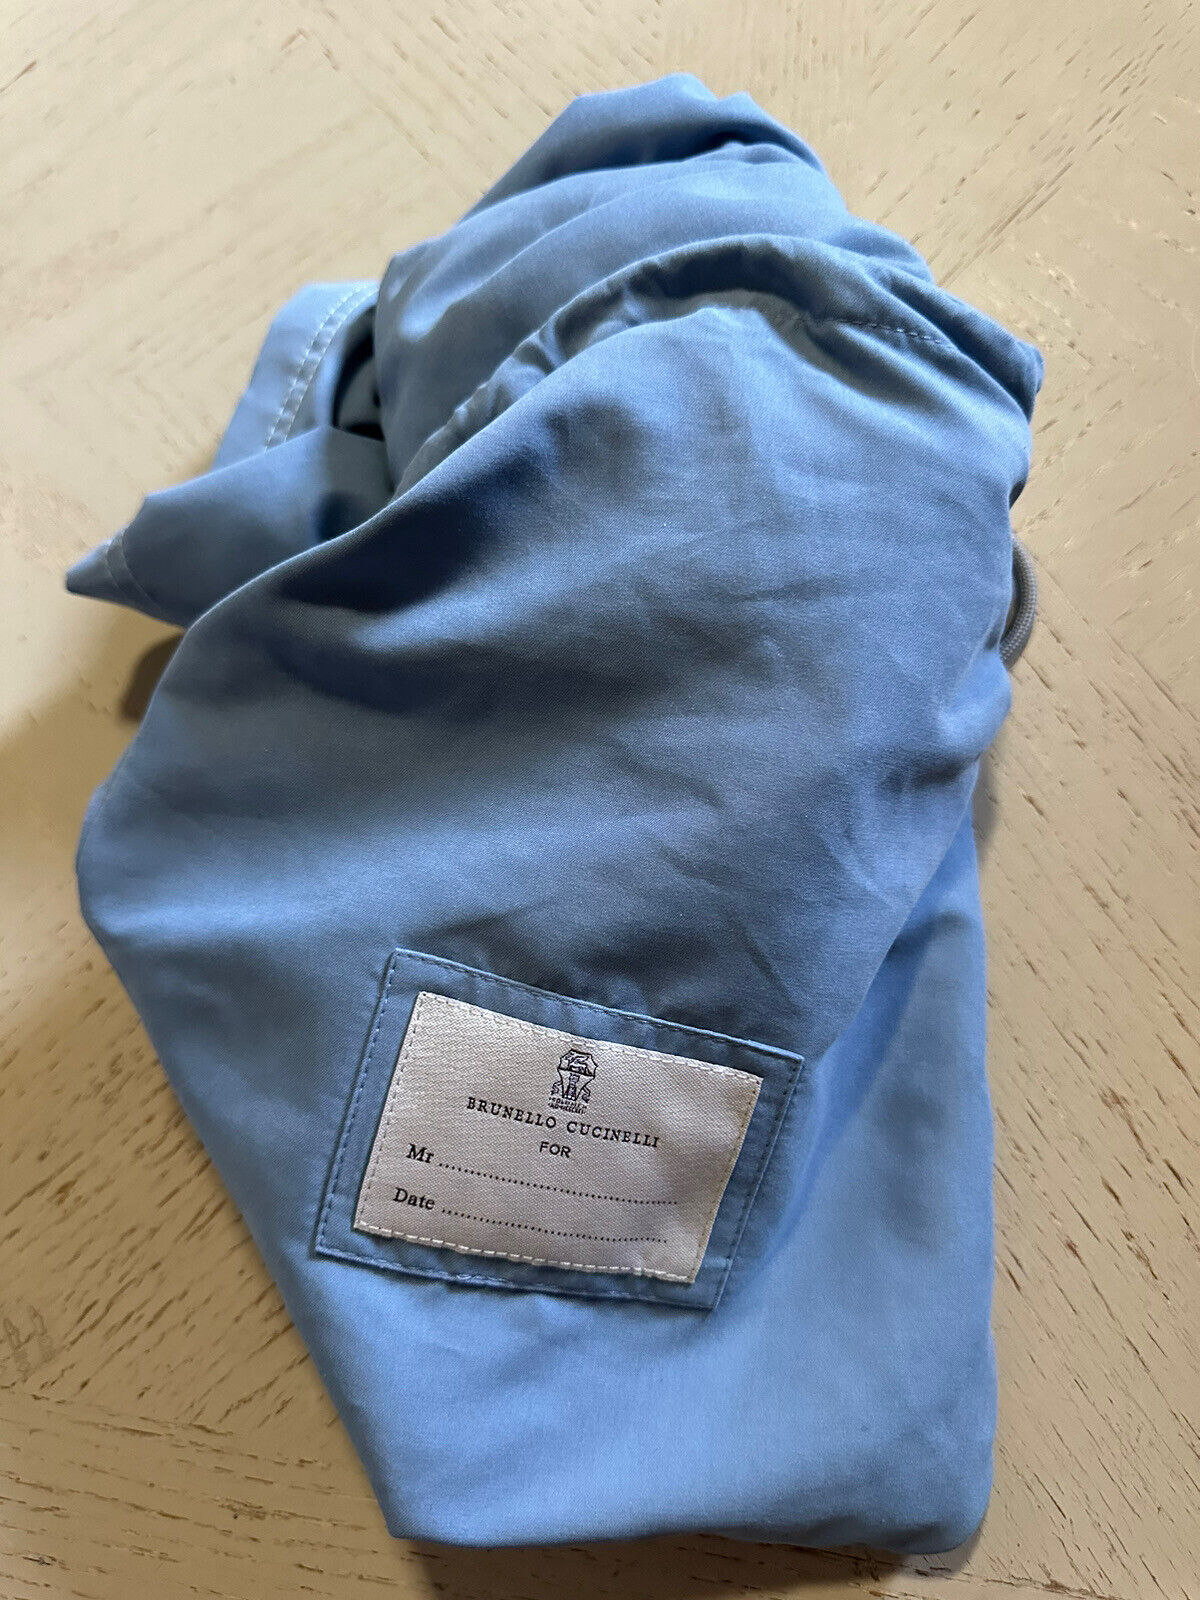 Neu mit Etikett: 550 $ Brunello Cucinelli Herren-Badeshorts mit Kordelzug, Farbe Blau, XXL